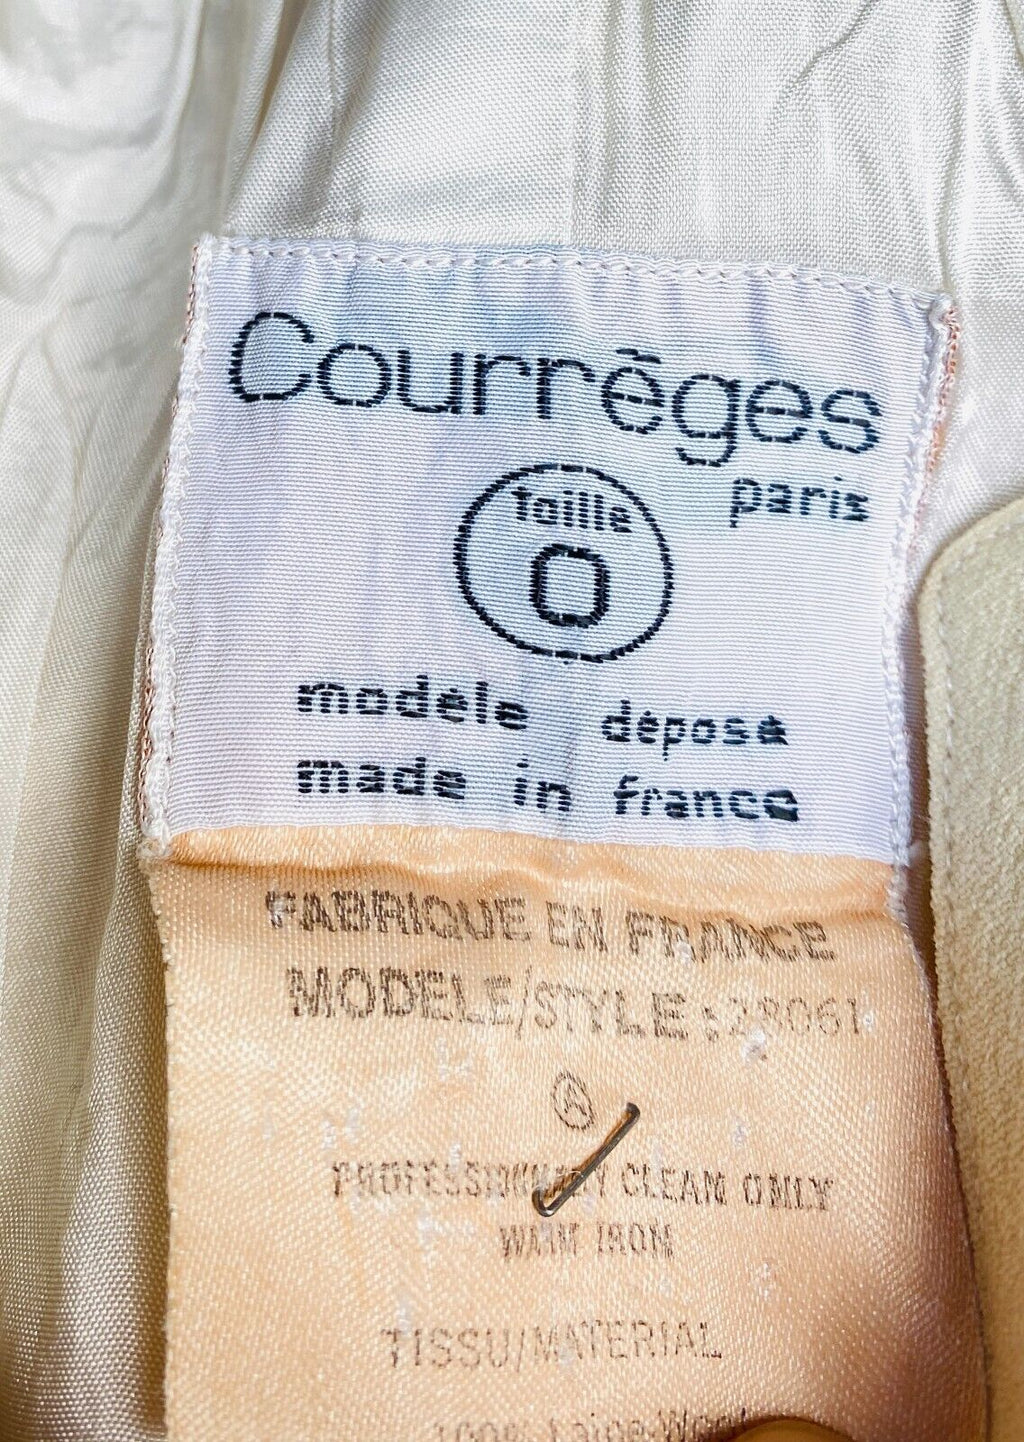 70s vintage beige wool dress Size 0 / Small